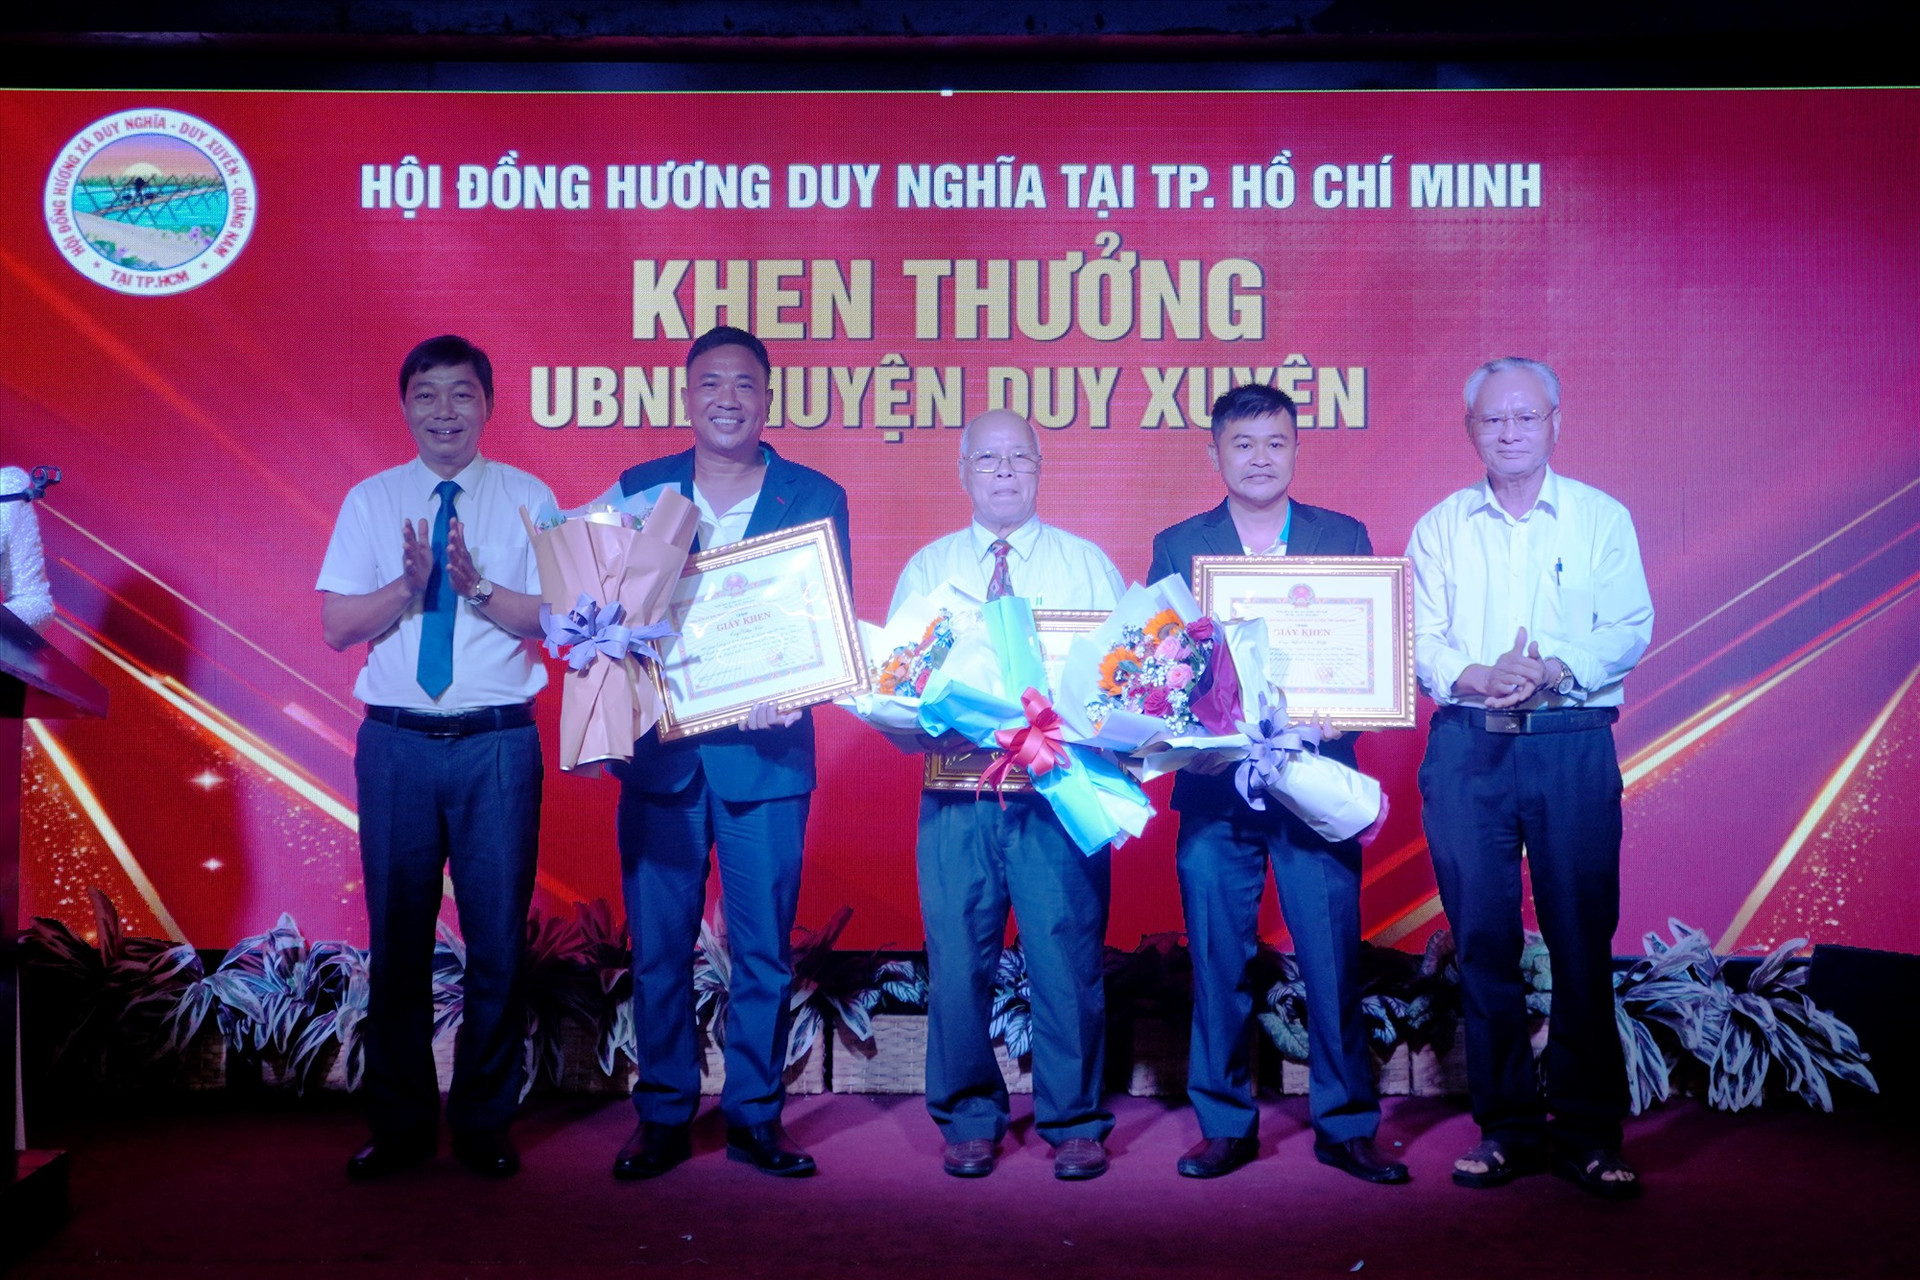 UBND huyện Duy Xuyên trao bằng khen cho các cá nhân đồng hương Duy Nghĩa tại TP.Hồ Chí Minh. Ảnh: PHAN VINH